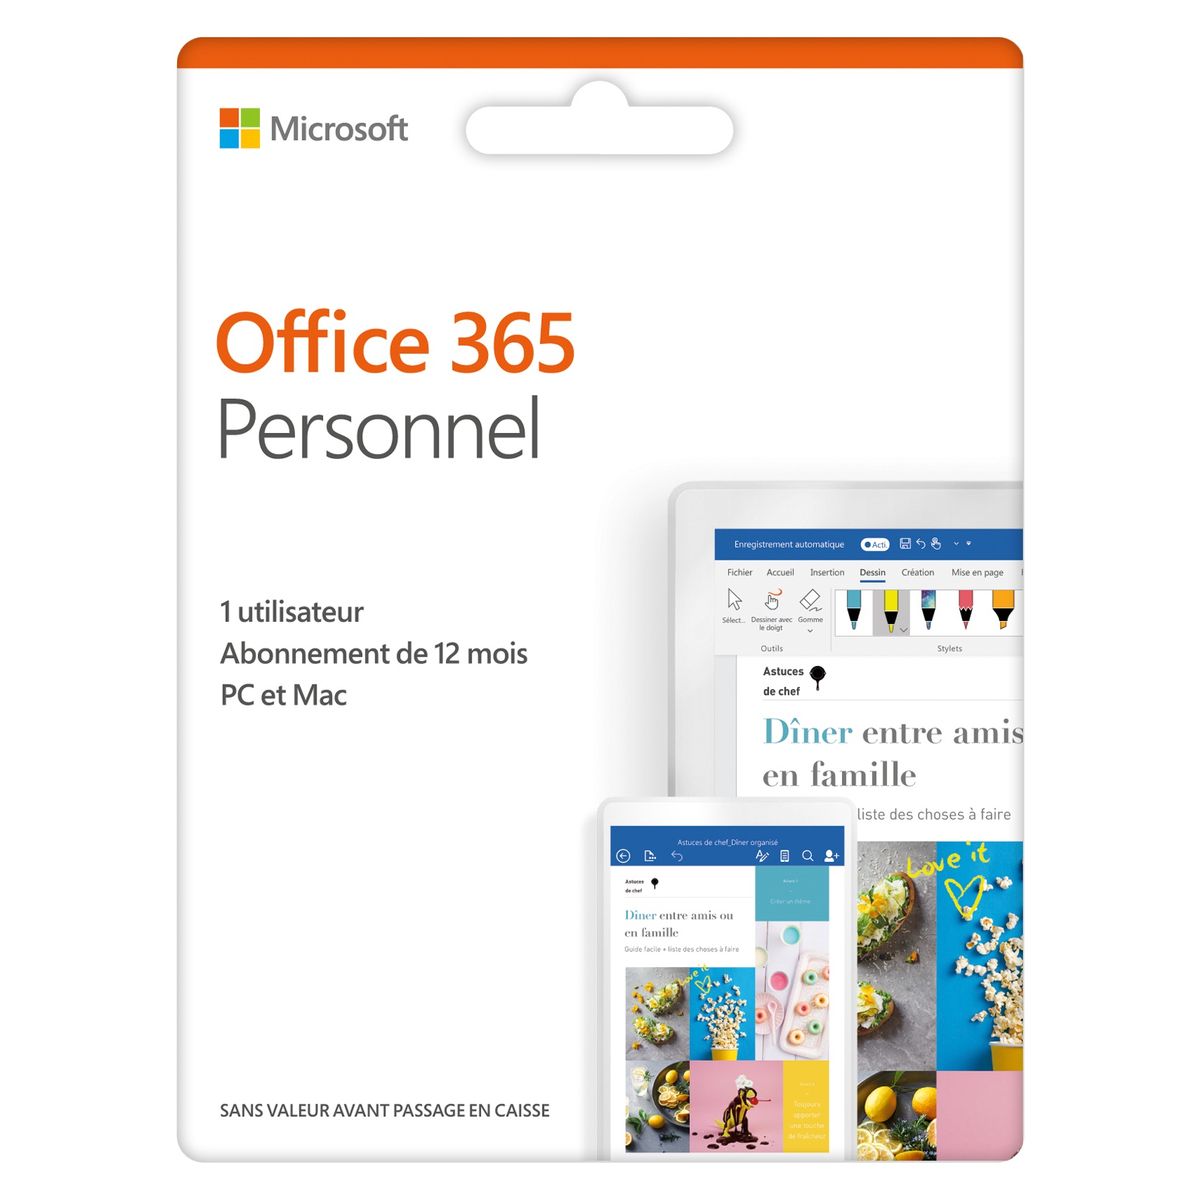 Office 365 персональный. Майкрософт 365 персональный. Office 365 personal. Microsoft qq2-01047. Office 365 personal купить.